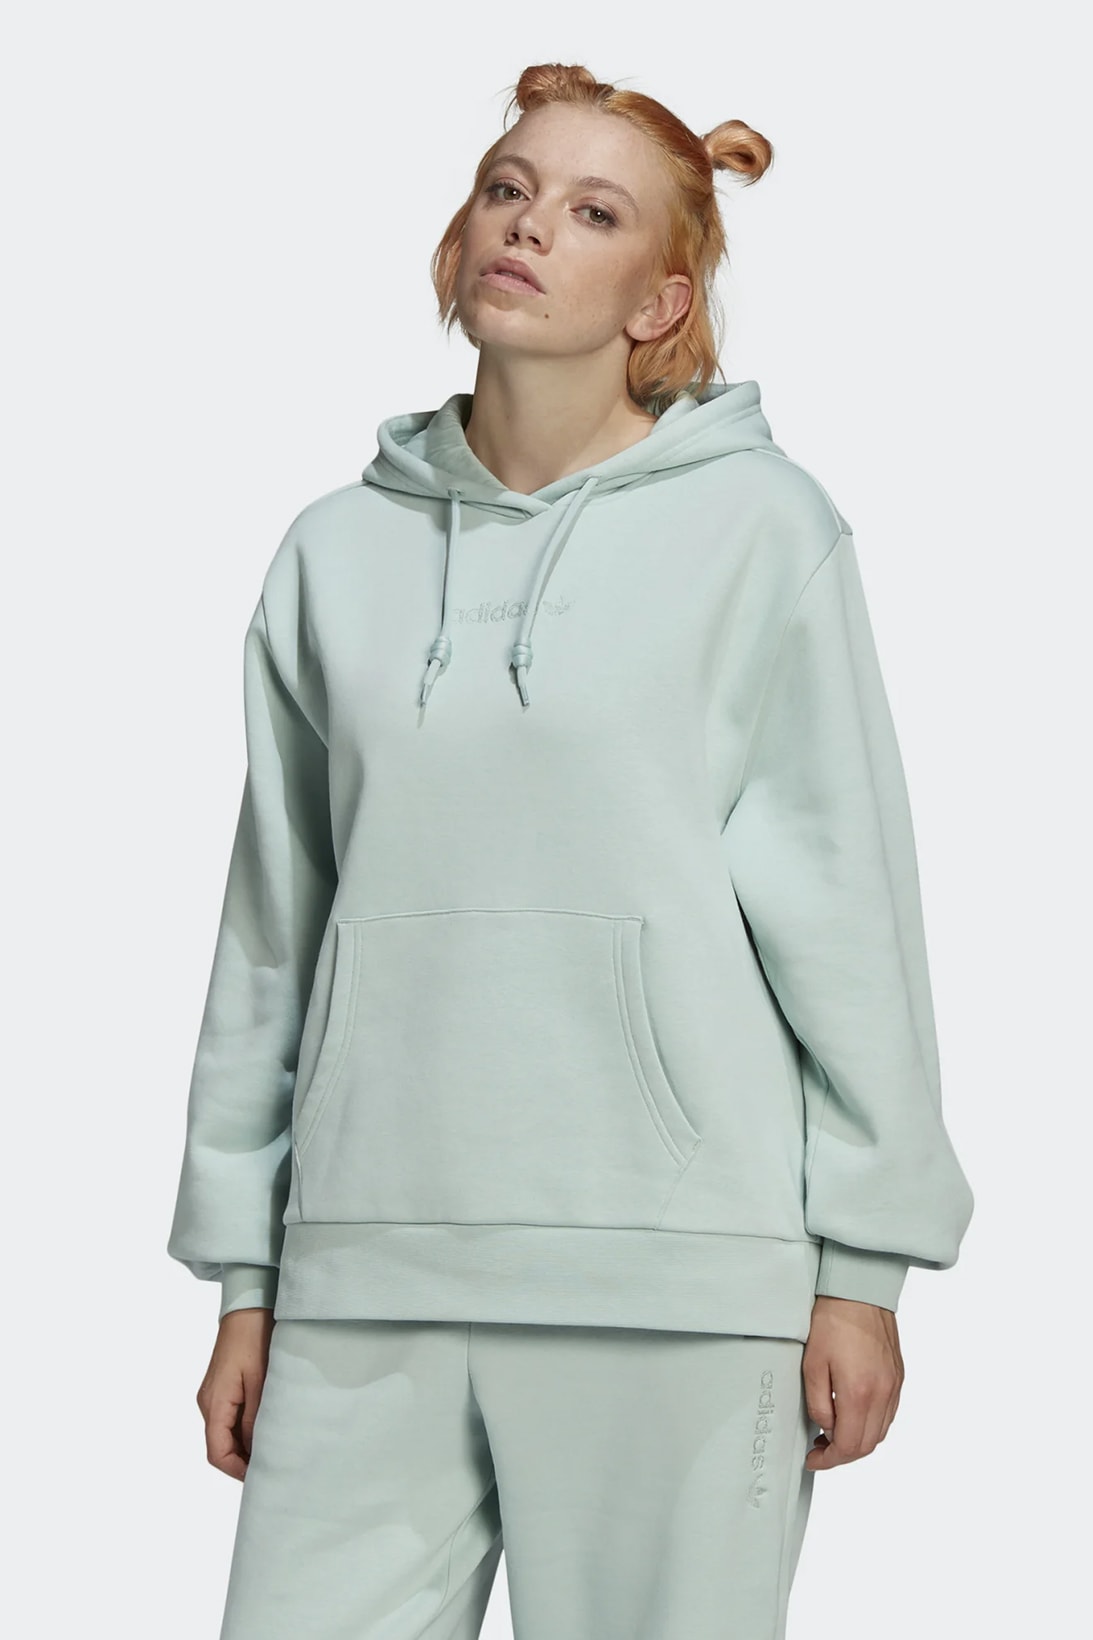 adidas originals womens hoodie sweatpants pastel green colorway